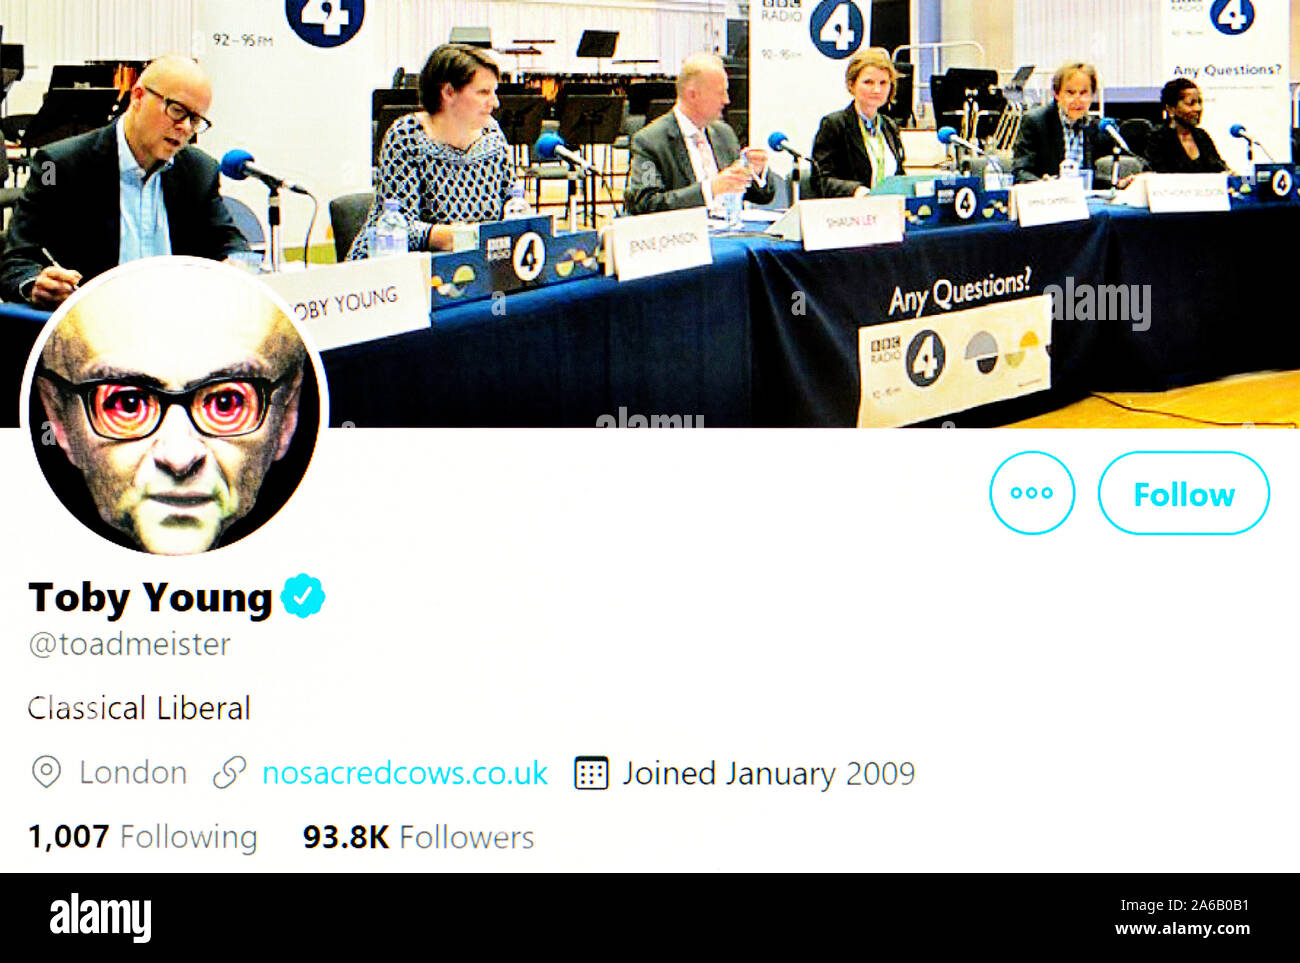 Página de Twitter (Oct 2019) Toby Young - periodista político Foto de stock